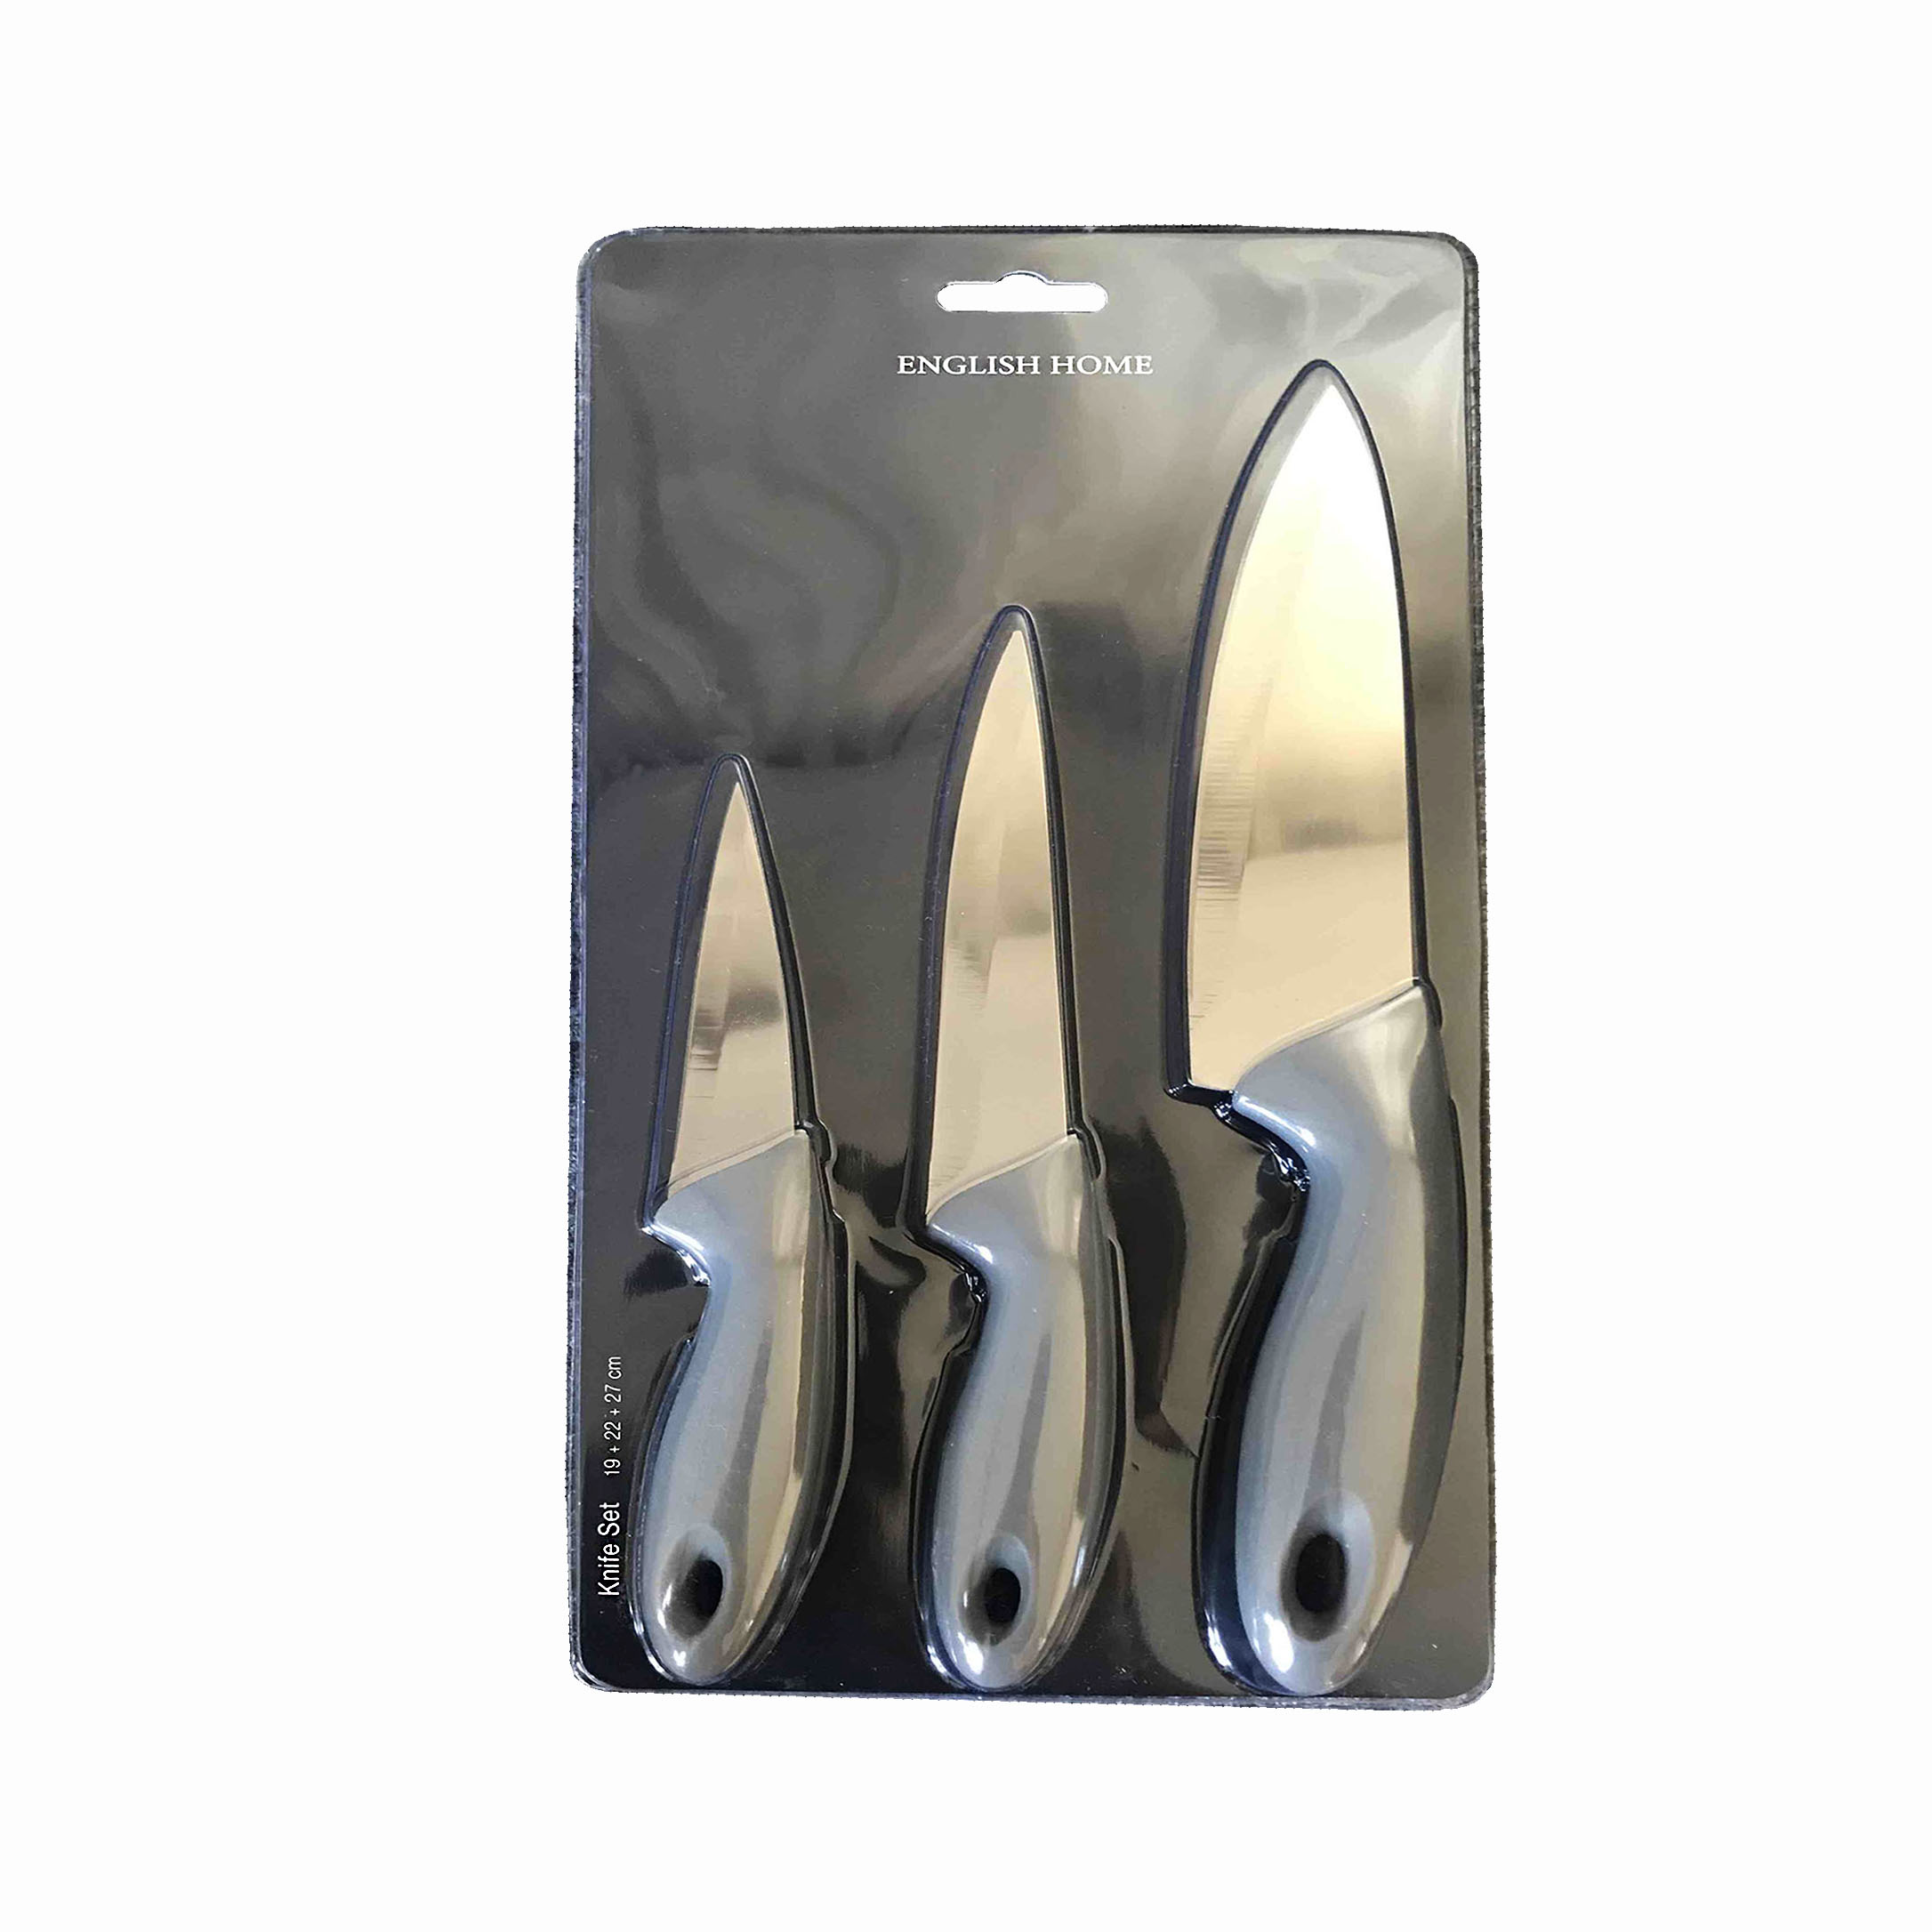 چاقوی آشپزخانه انگلیش هوم مدل Leydia بسته سه عددی